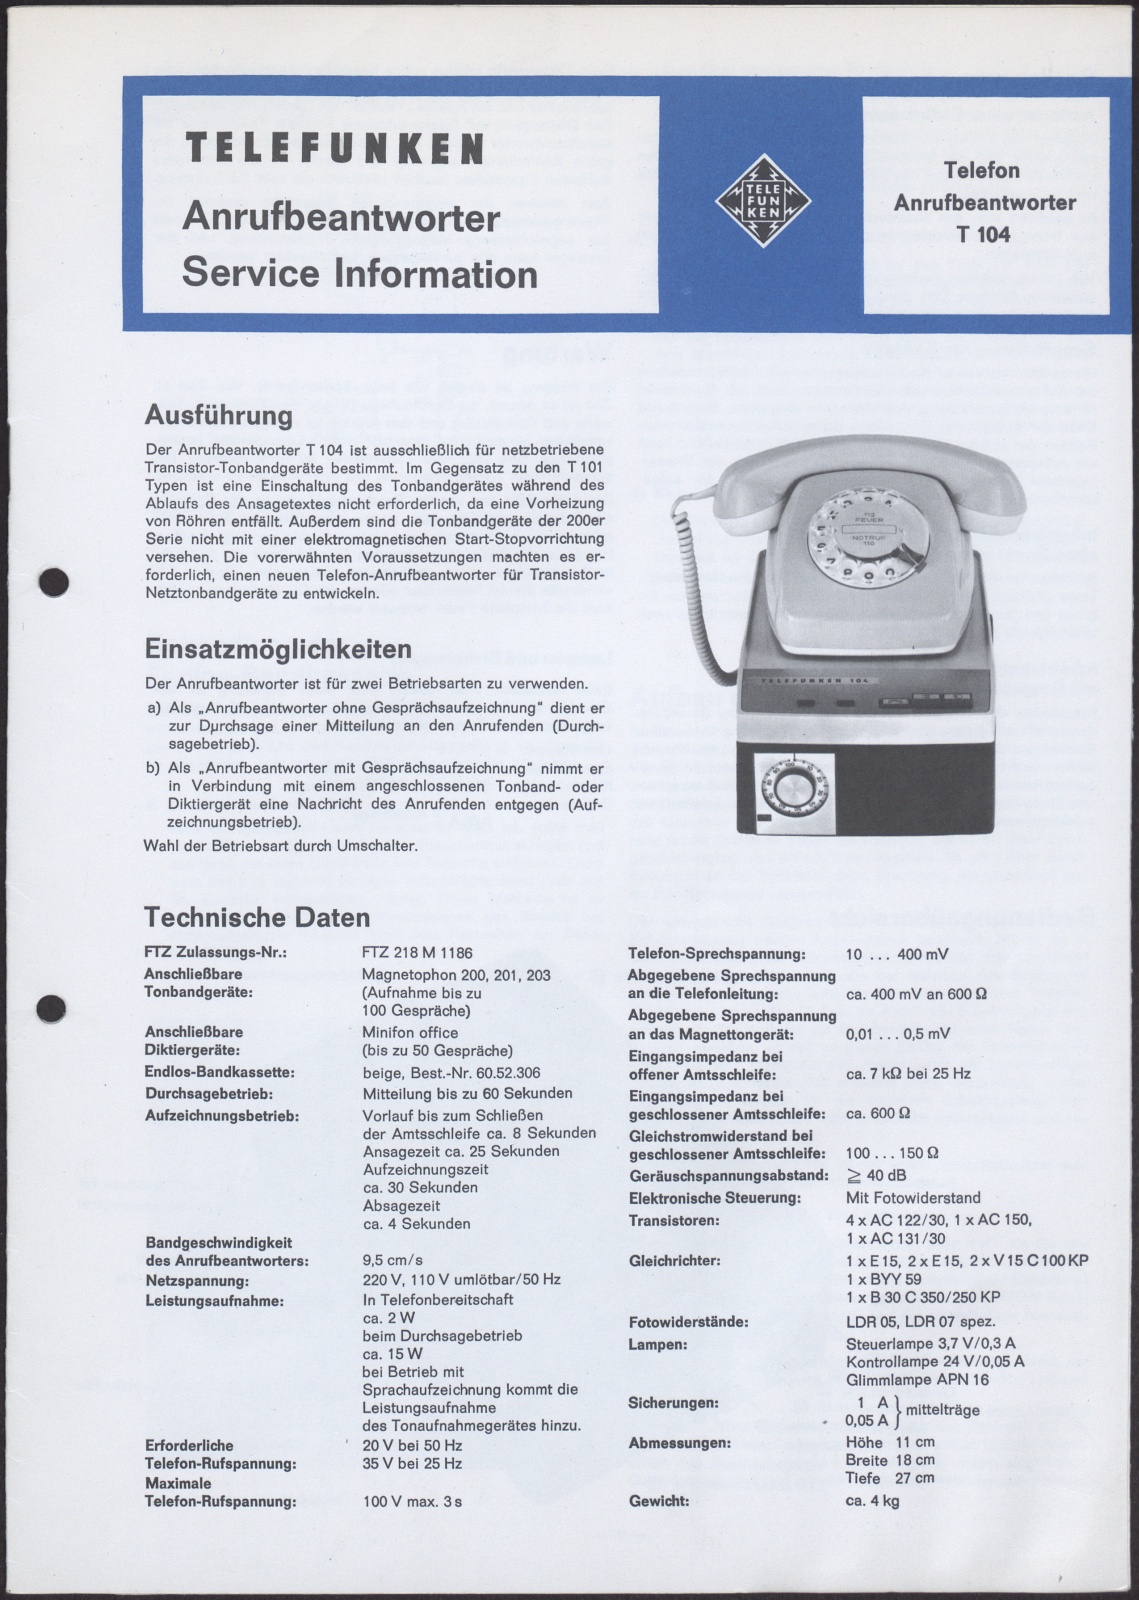 Bedienungsanleitung: Telefunken Anrufbeantworter Service Information Telefon Anrufbeantworter T 104 (Stiftung Deutsches Technikmuseum Berlin CC0)